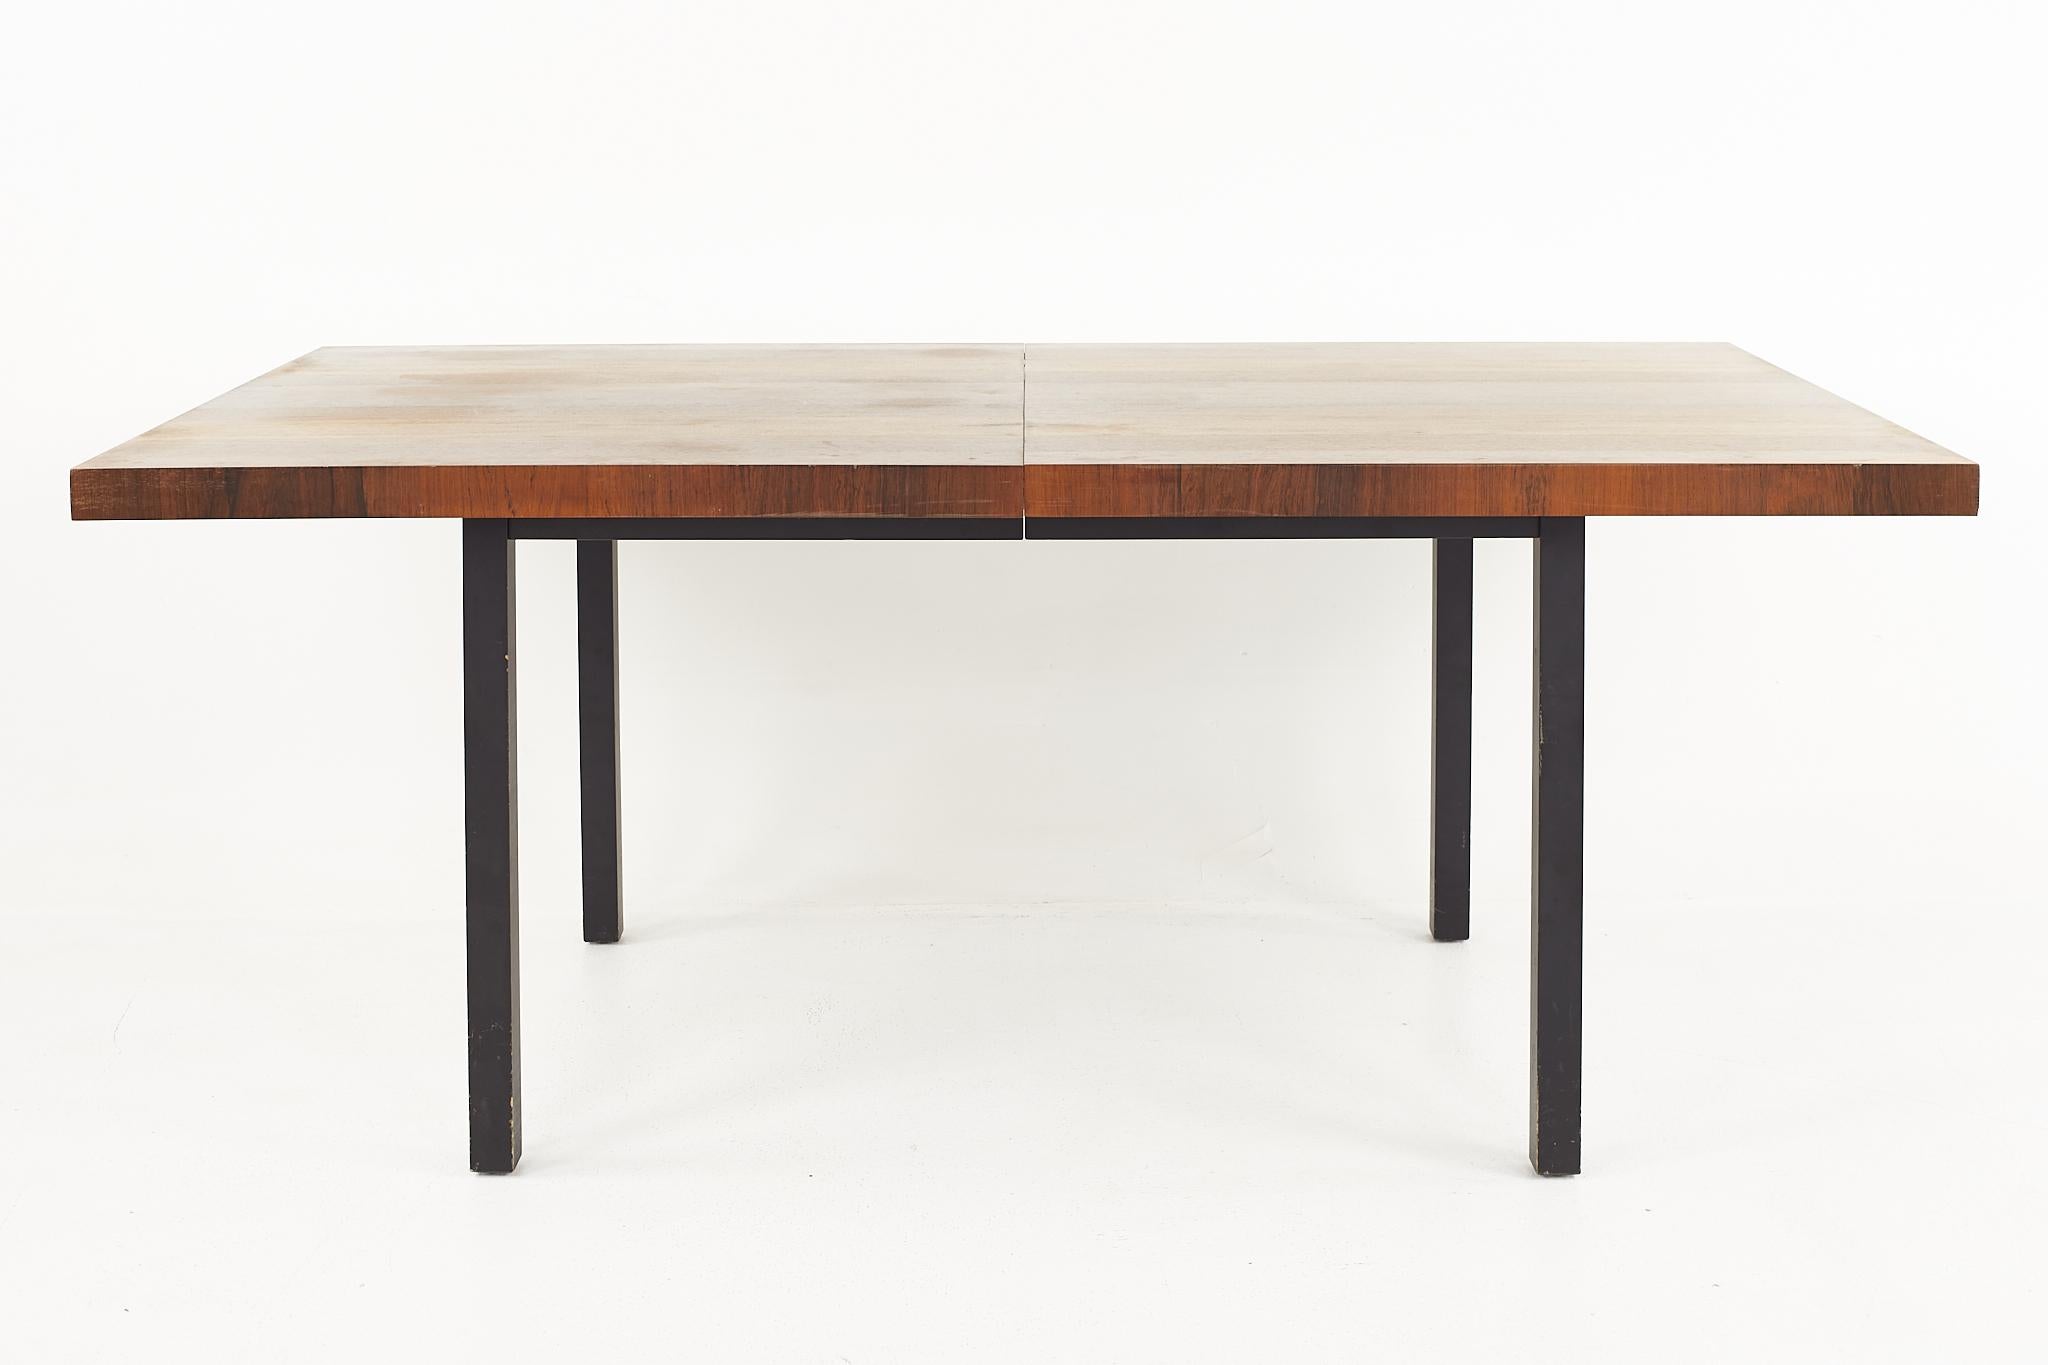 Milo Baughman für Directional, Esstisch aus mehreren Holzarten aus der Mitte des Jahrhunderts

Abmessungen des Tisches: 60 breit x 38 tief x 28,75 hoch, mit einer Stuhldurchmesser von 25,75 Zoll, jedes Blatt ist 20 breit, was eine maximale